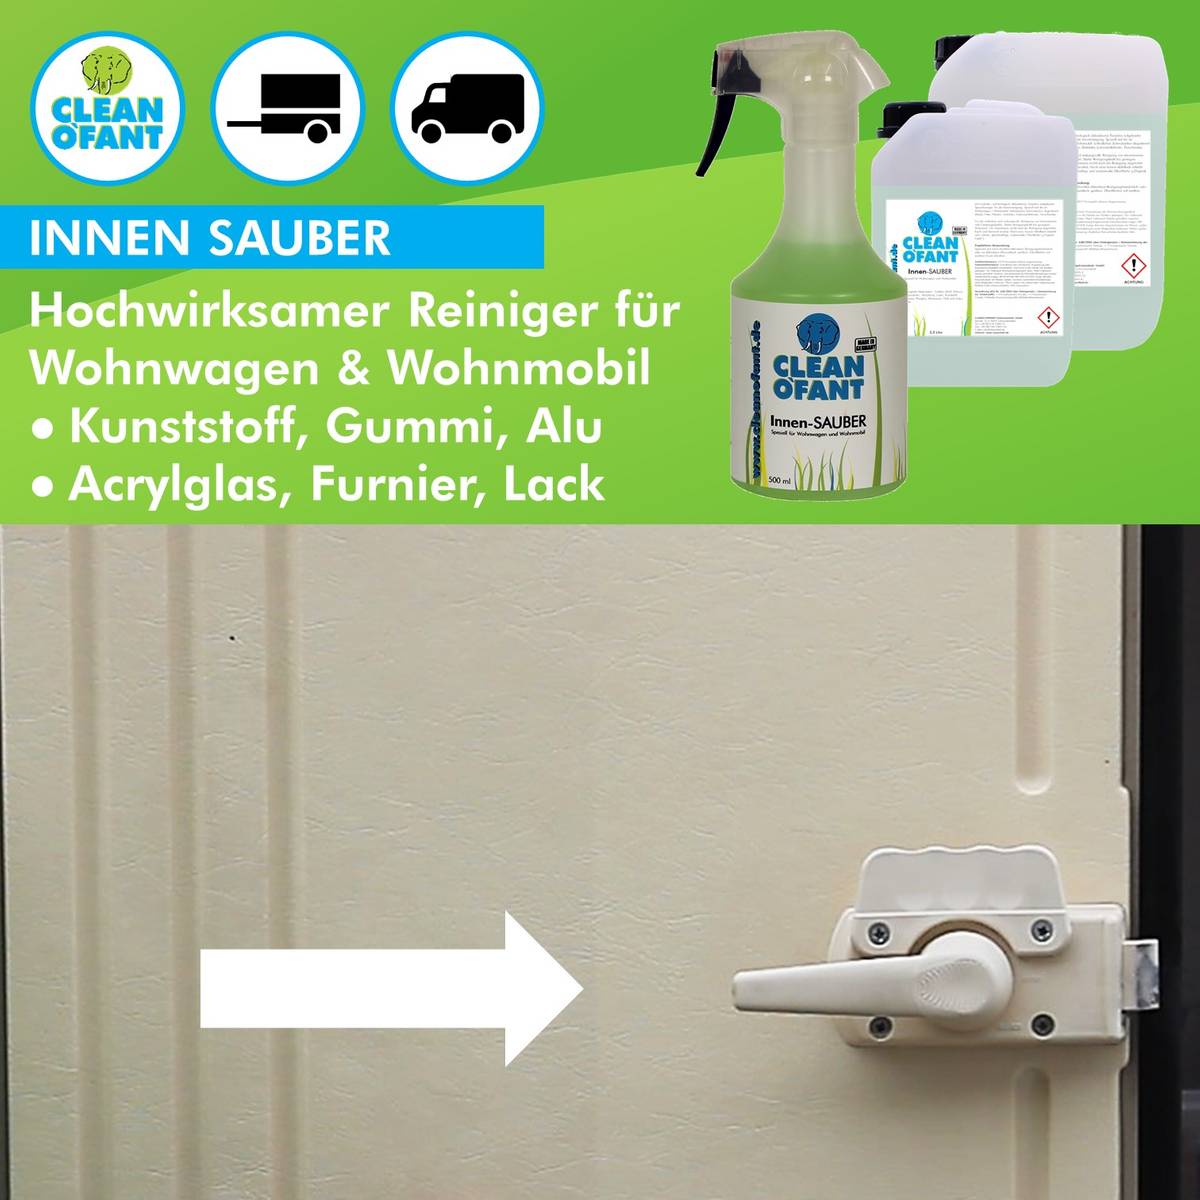 CLEANOFANT Innen-SAUBER (Innenreiniger) - 500 ml